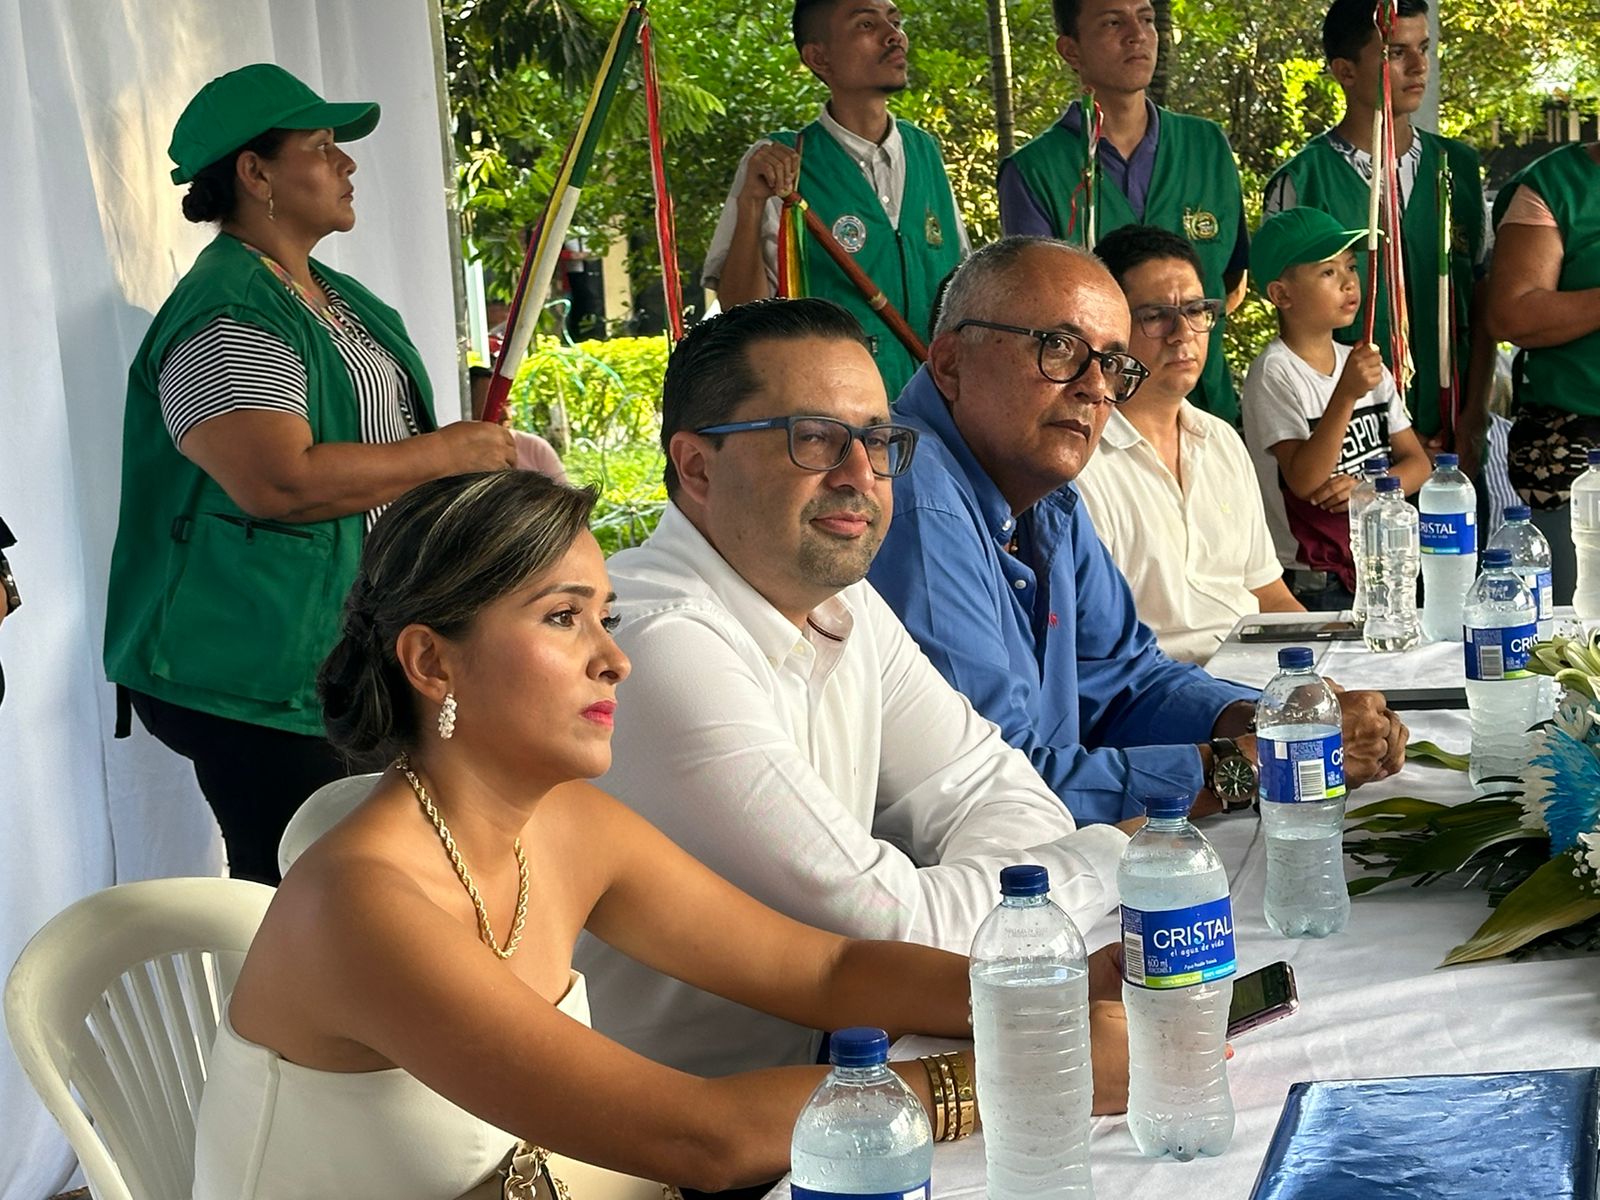 Vías veredales, proyectos productivos, modernización de los servicios públicos y gasificación rural: Los desafíos que enfrenta Diego Matiz, el nuevo alcalde de Ortega 2